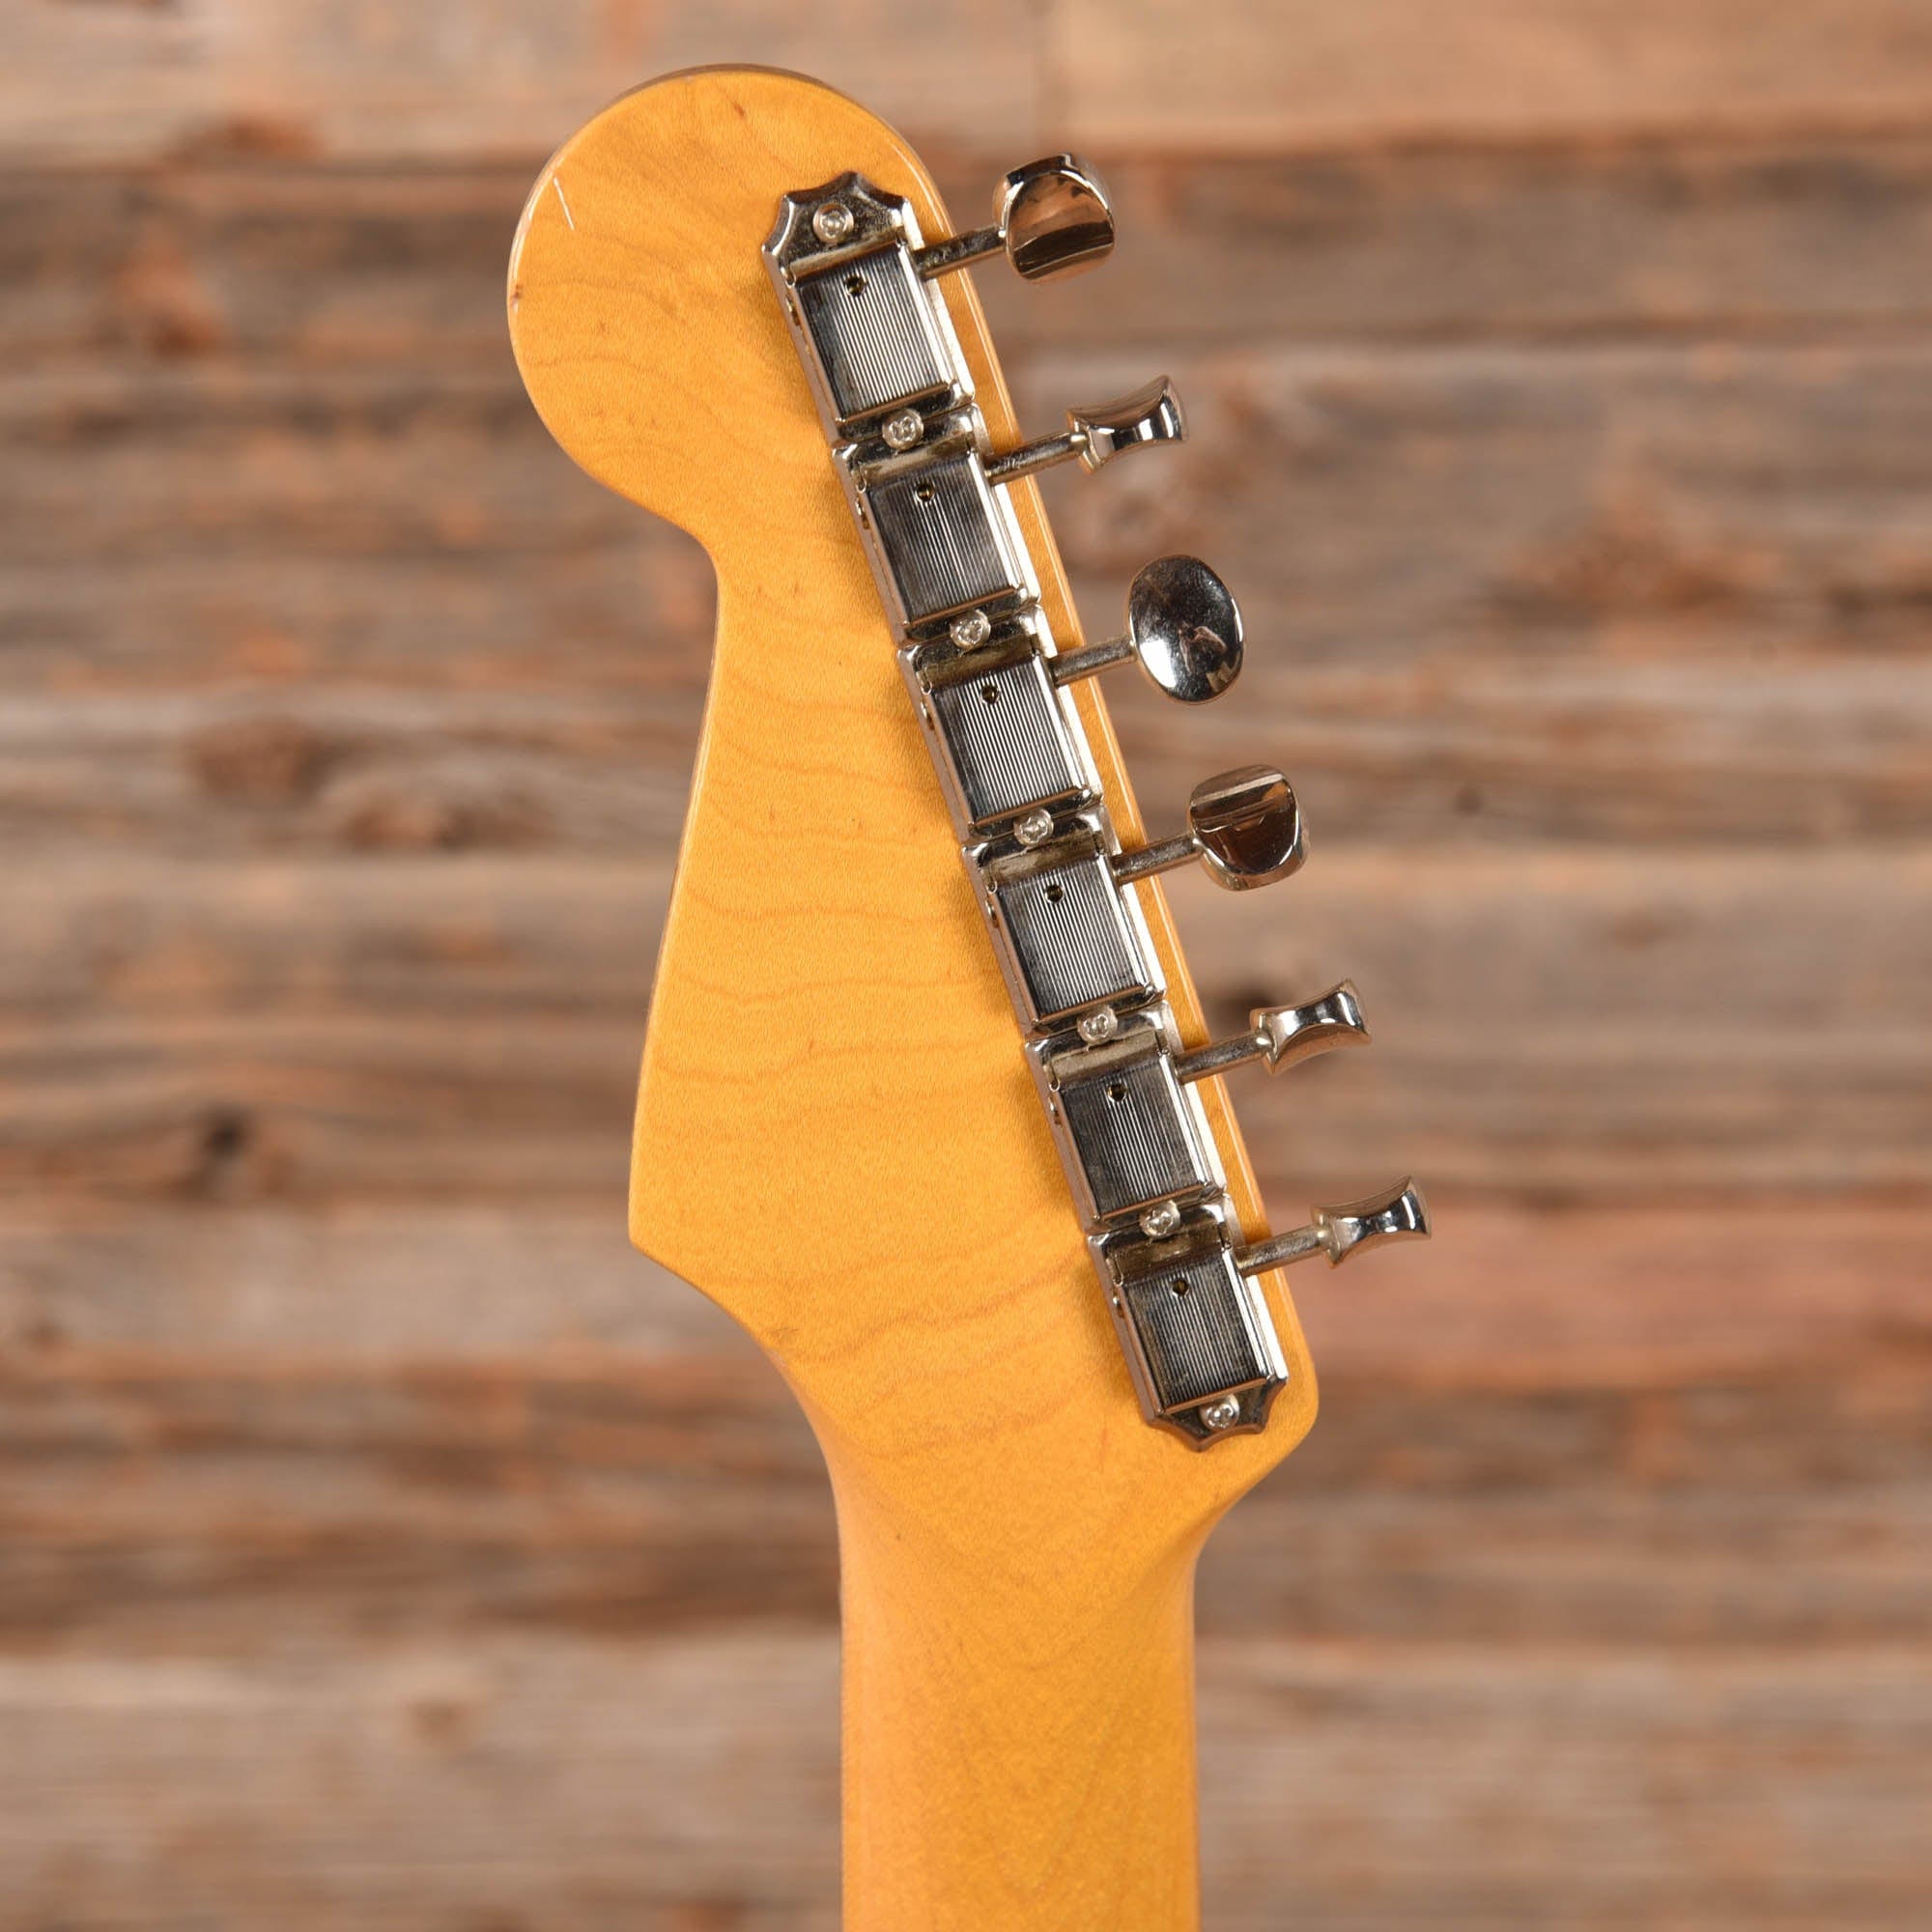 Fender Coronado II Cherry Sunburst 1967 Electric Guitars / Semi-Hollow